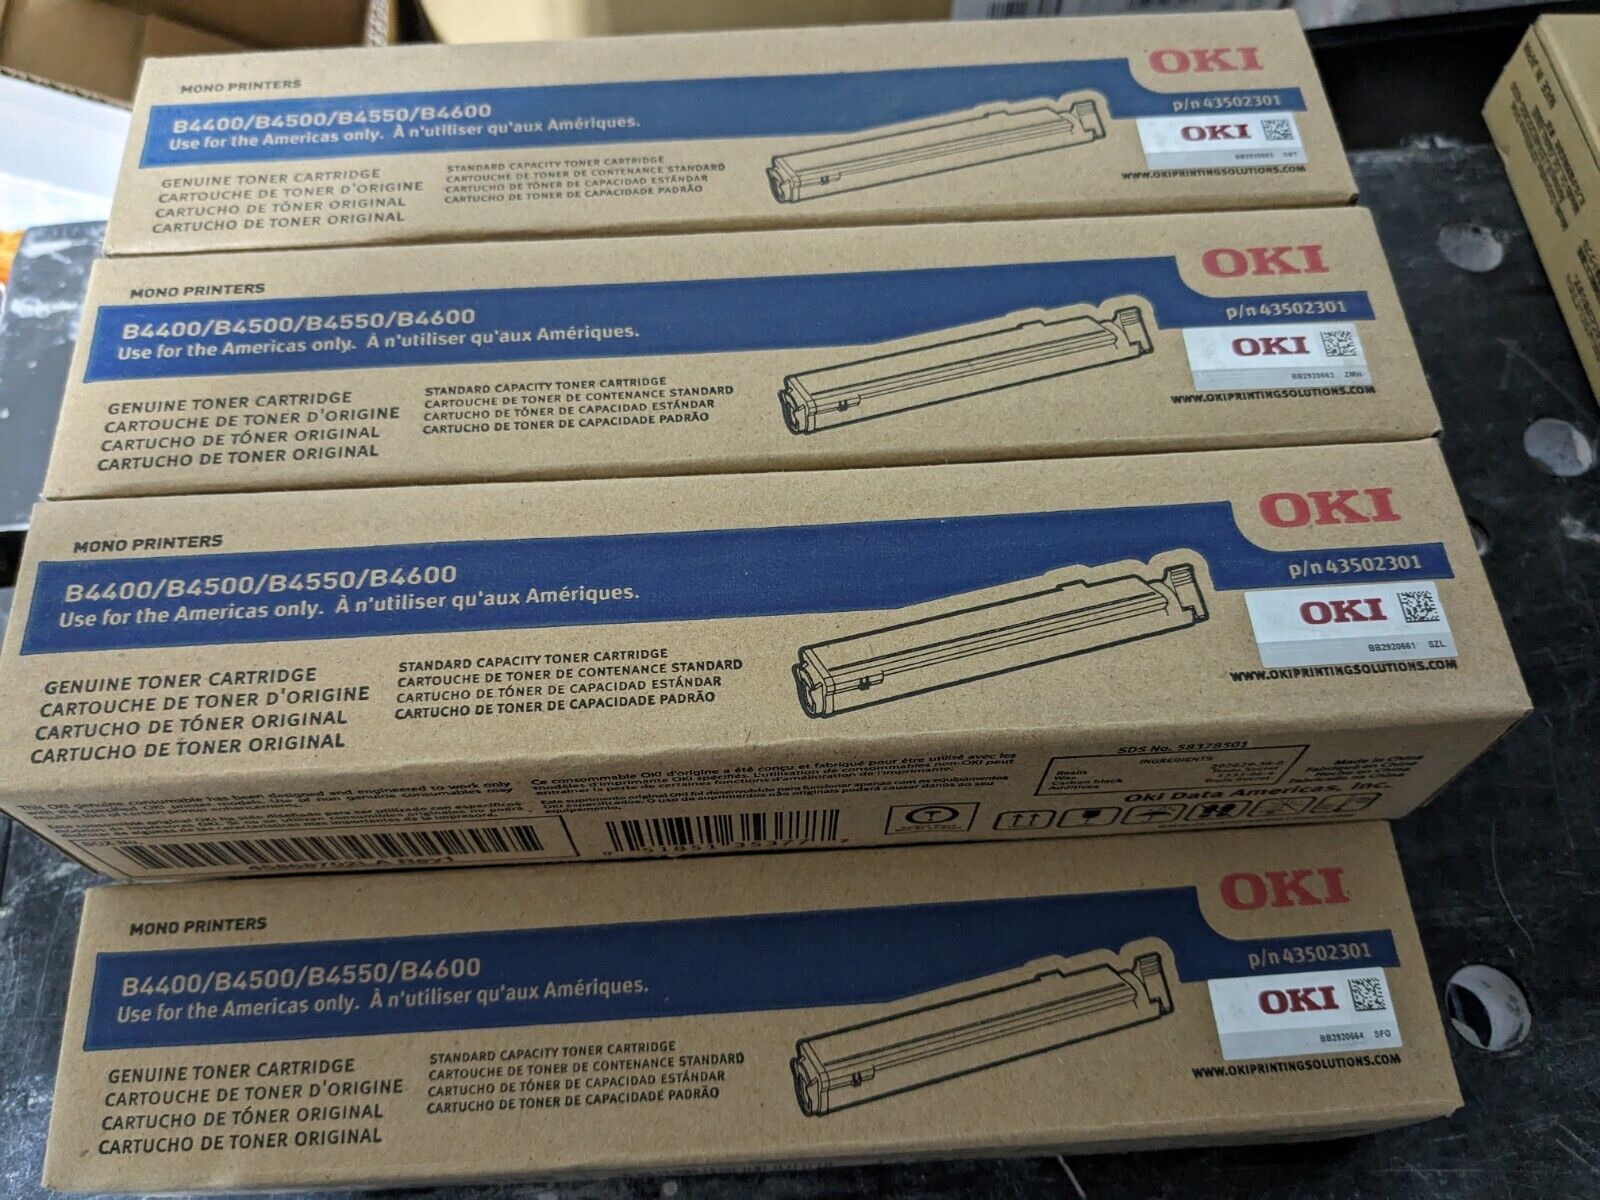 Oki 43502301 Genuine Toner Cartridge Mono Printers B4400/B4500/B4550/B4600